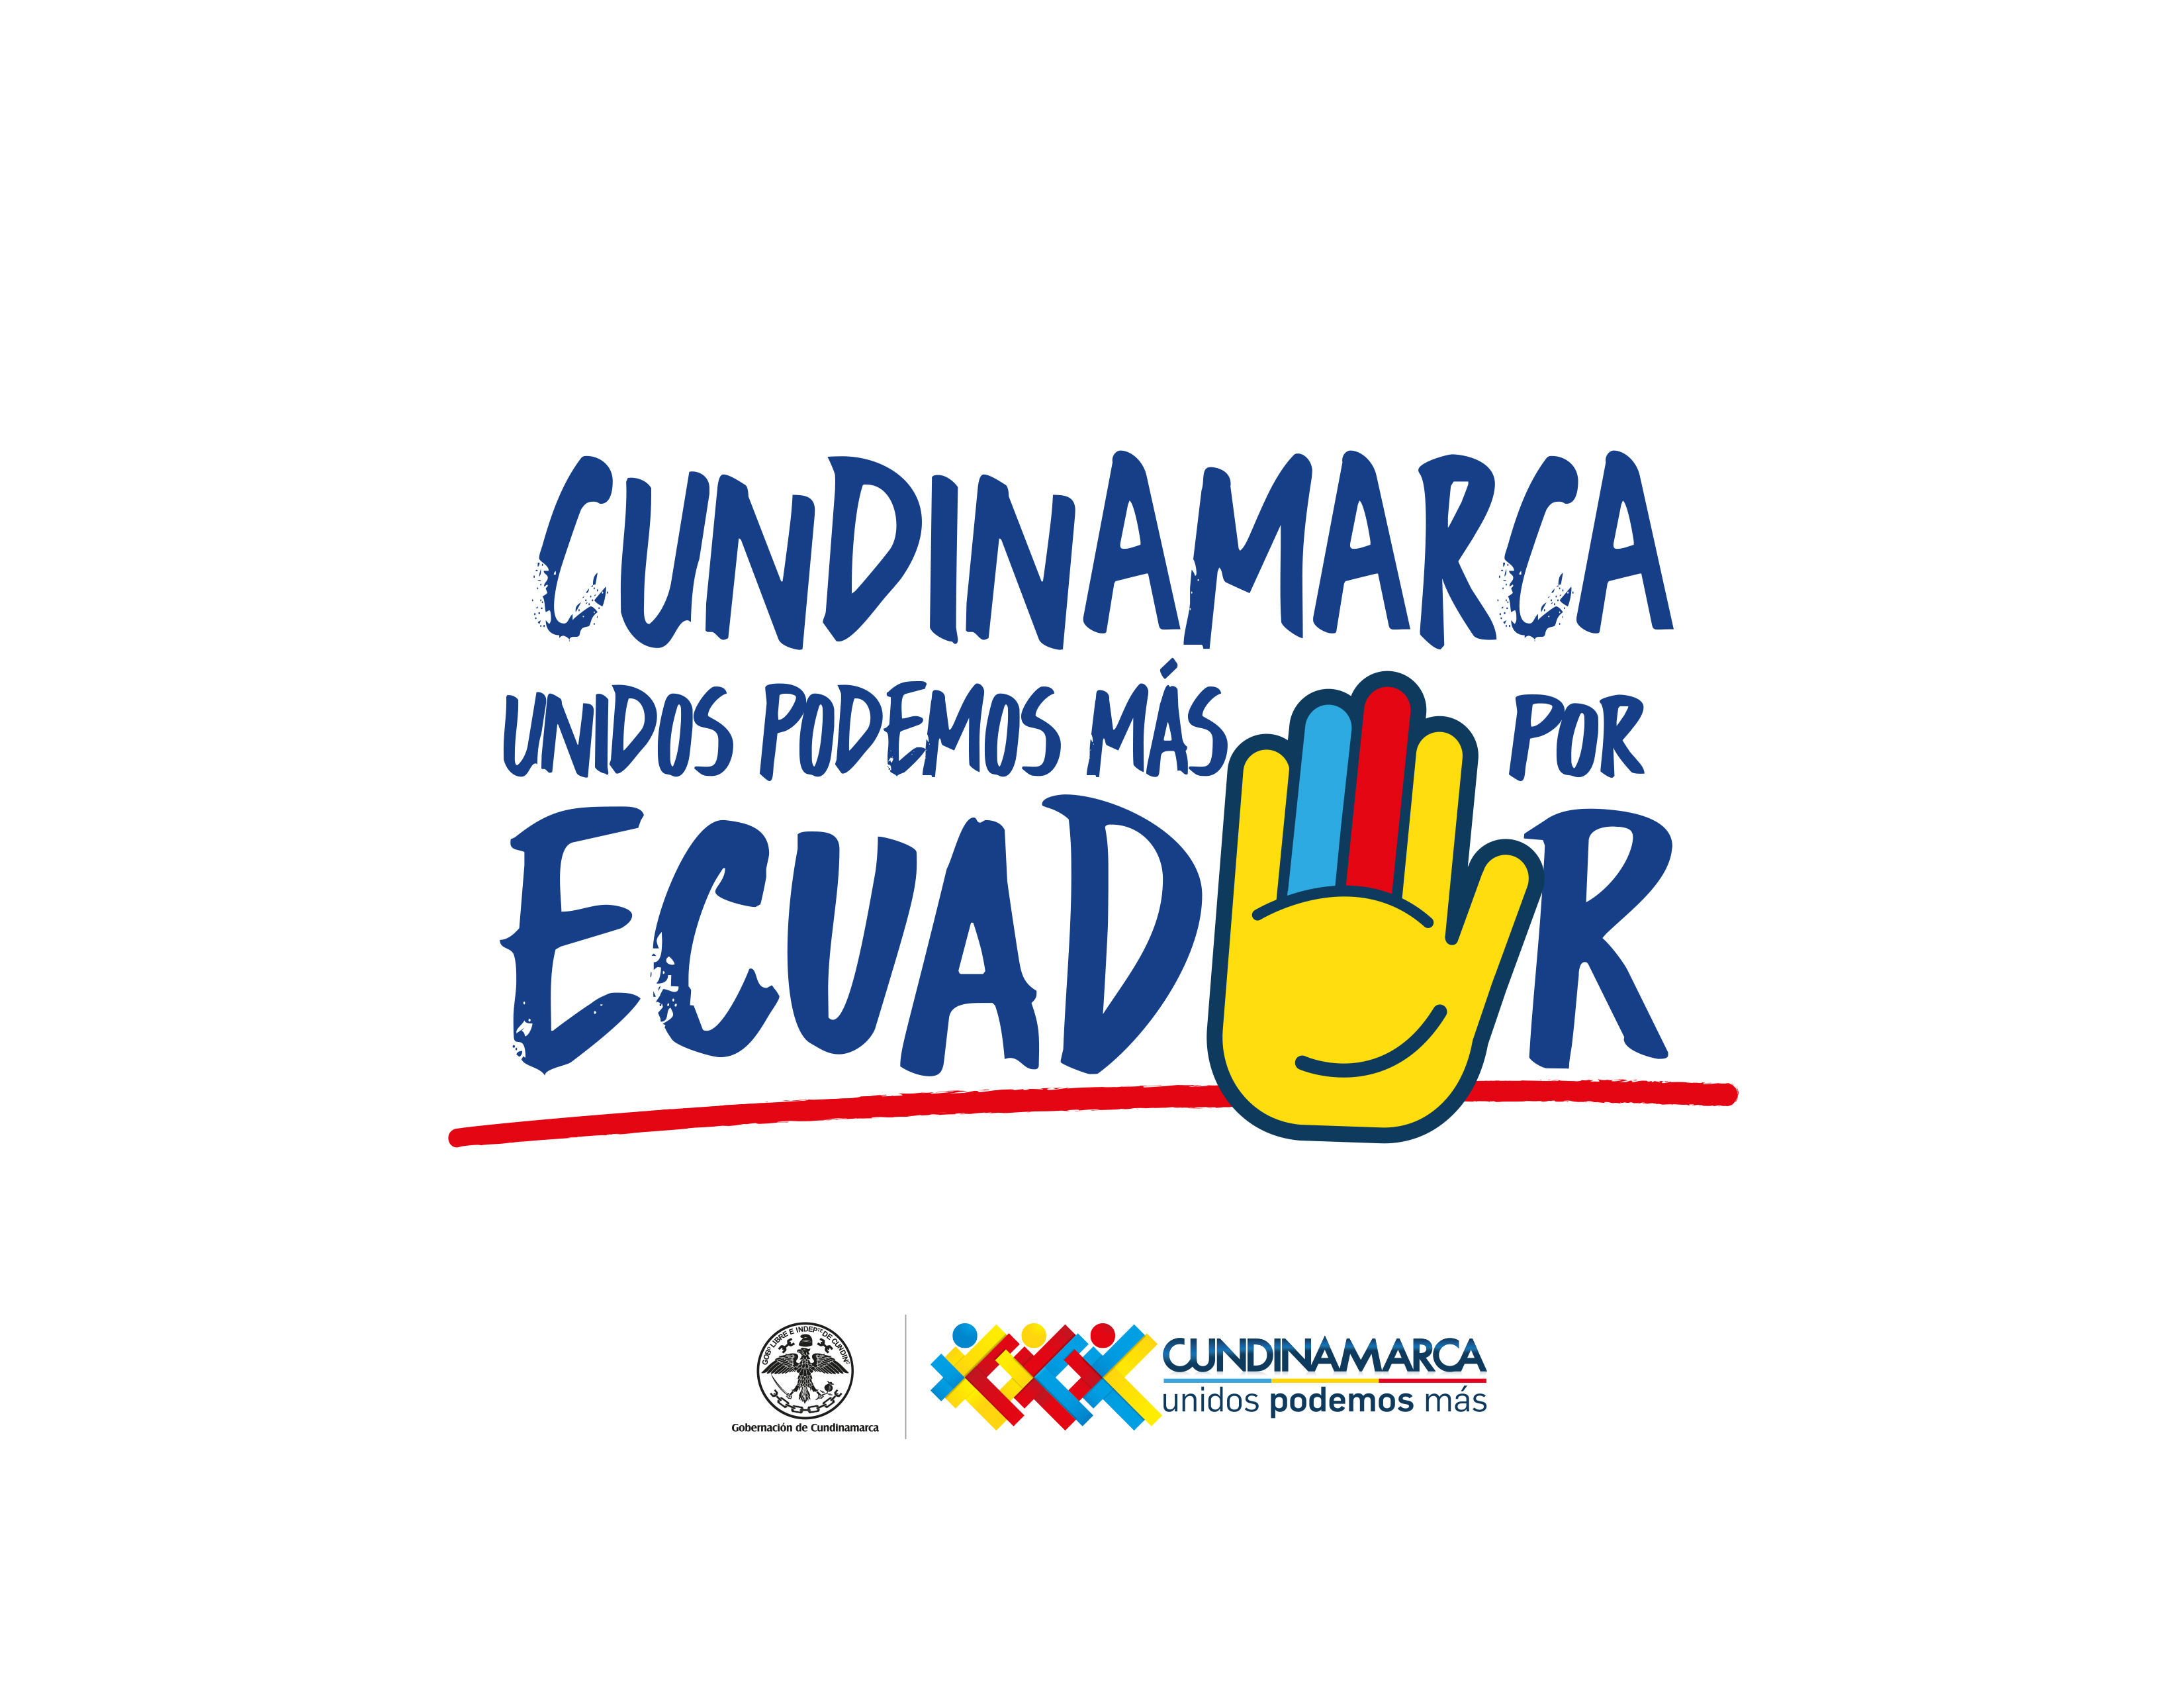 “Unidos podemos más por Ecuador”